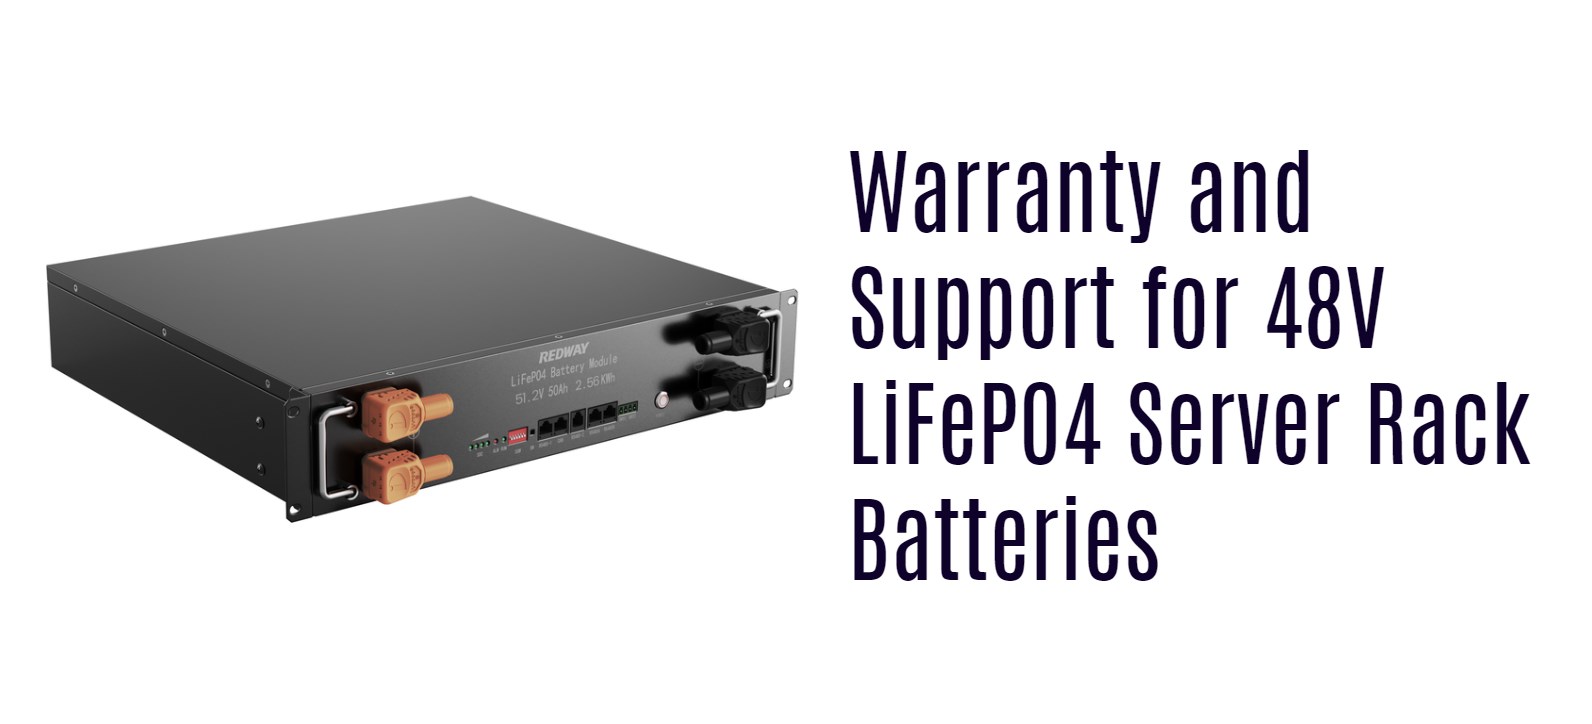 Warranty and Support for 48V LiFePO4 Server Rack Batteries. 48v 50ah server rack battery module manufacturer